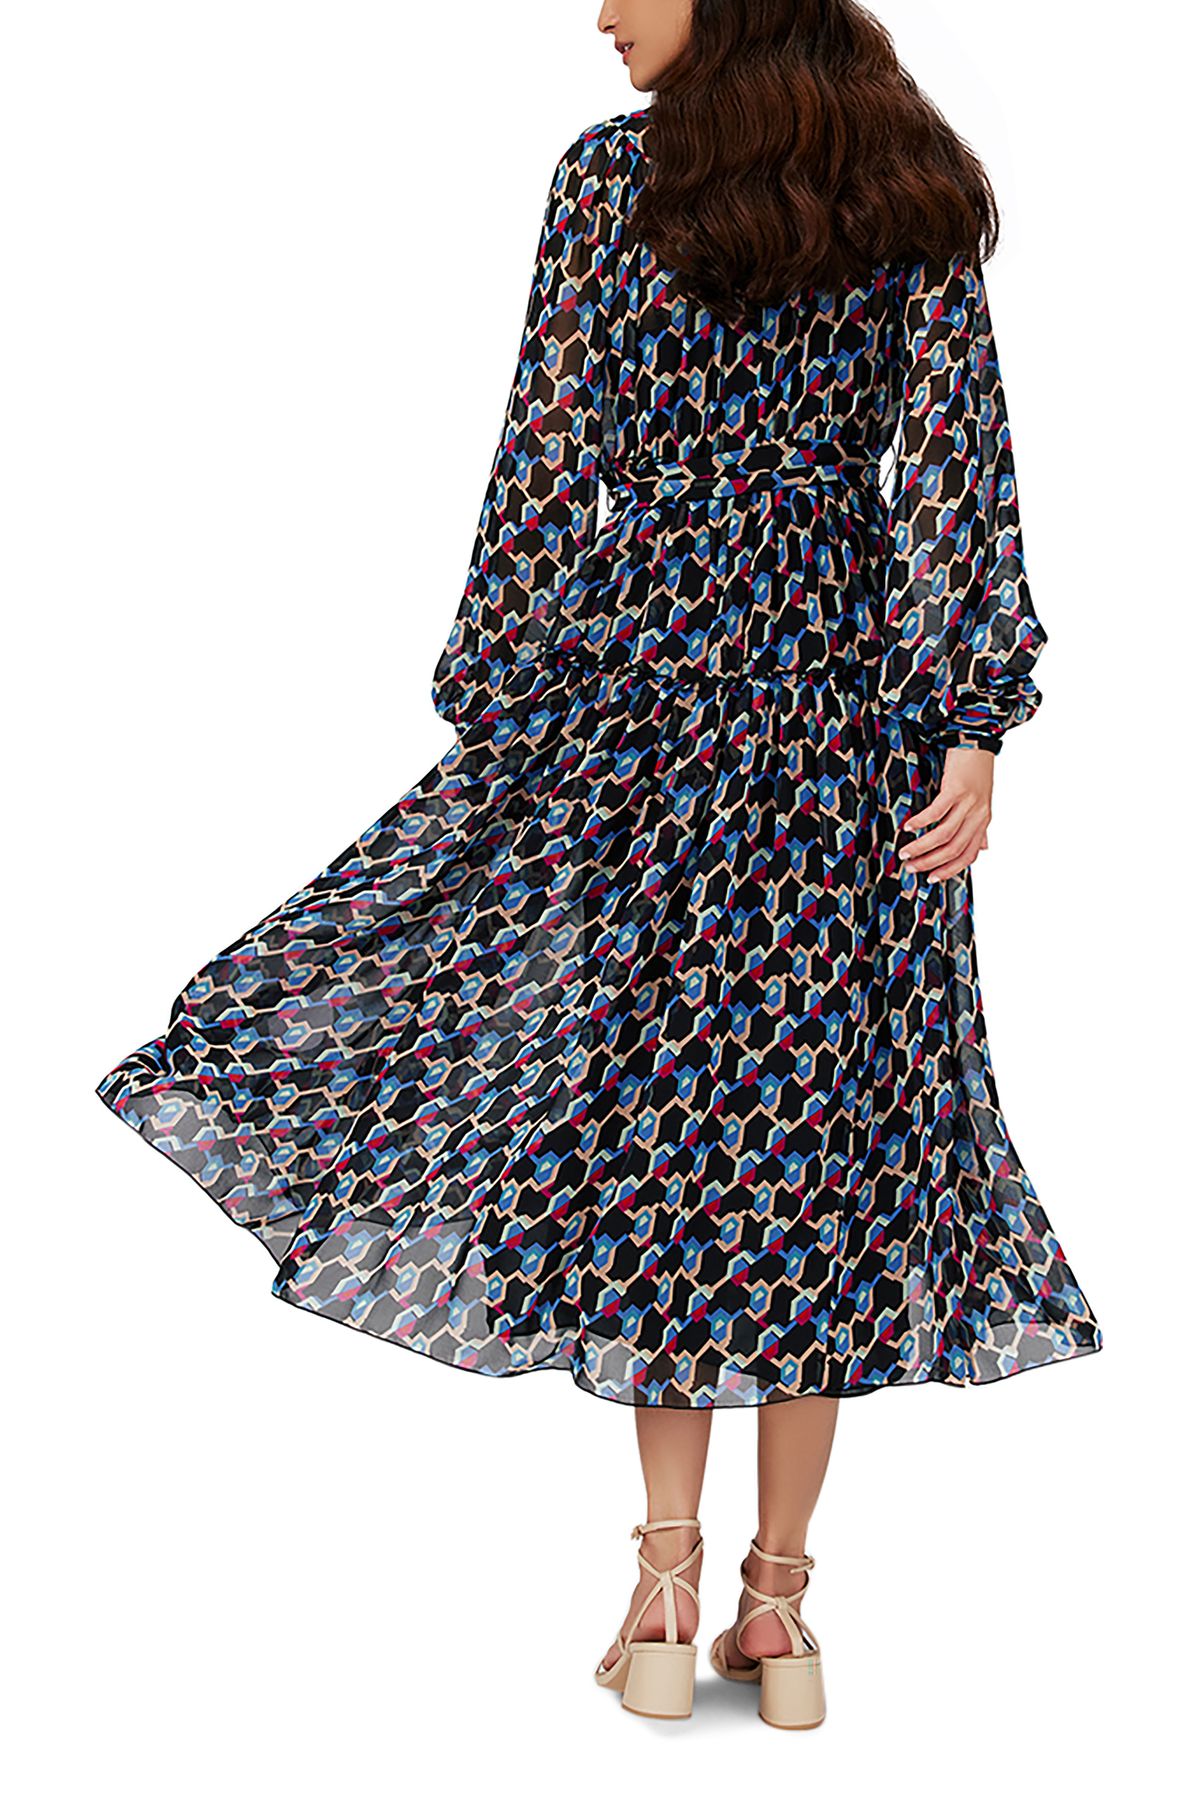 Diane Von Furstenberg Kent dress